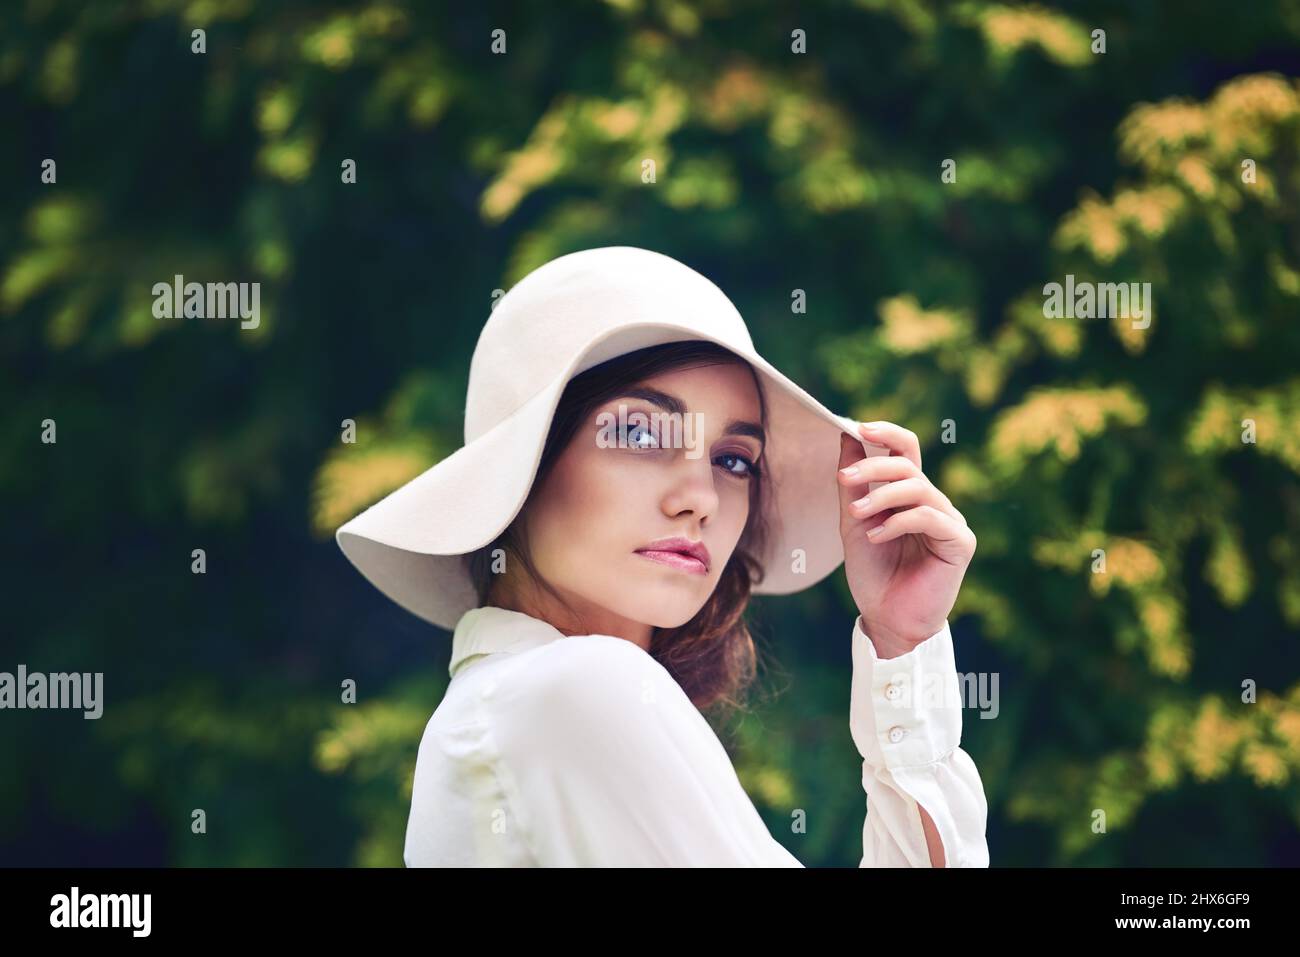 La sua bellezza è assolutamente unica nel suo genere. Ritratto di una giovane donna attraente che indossa un cappello elegante all'aperto. Foto Stock